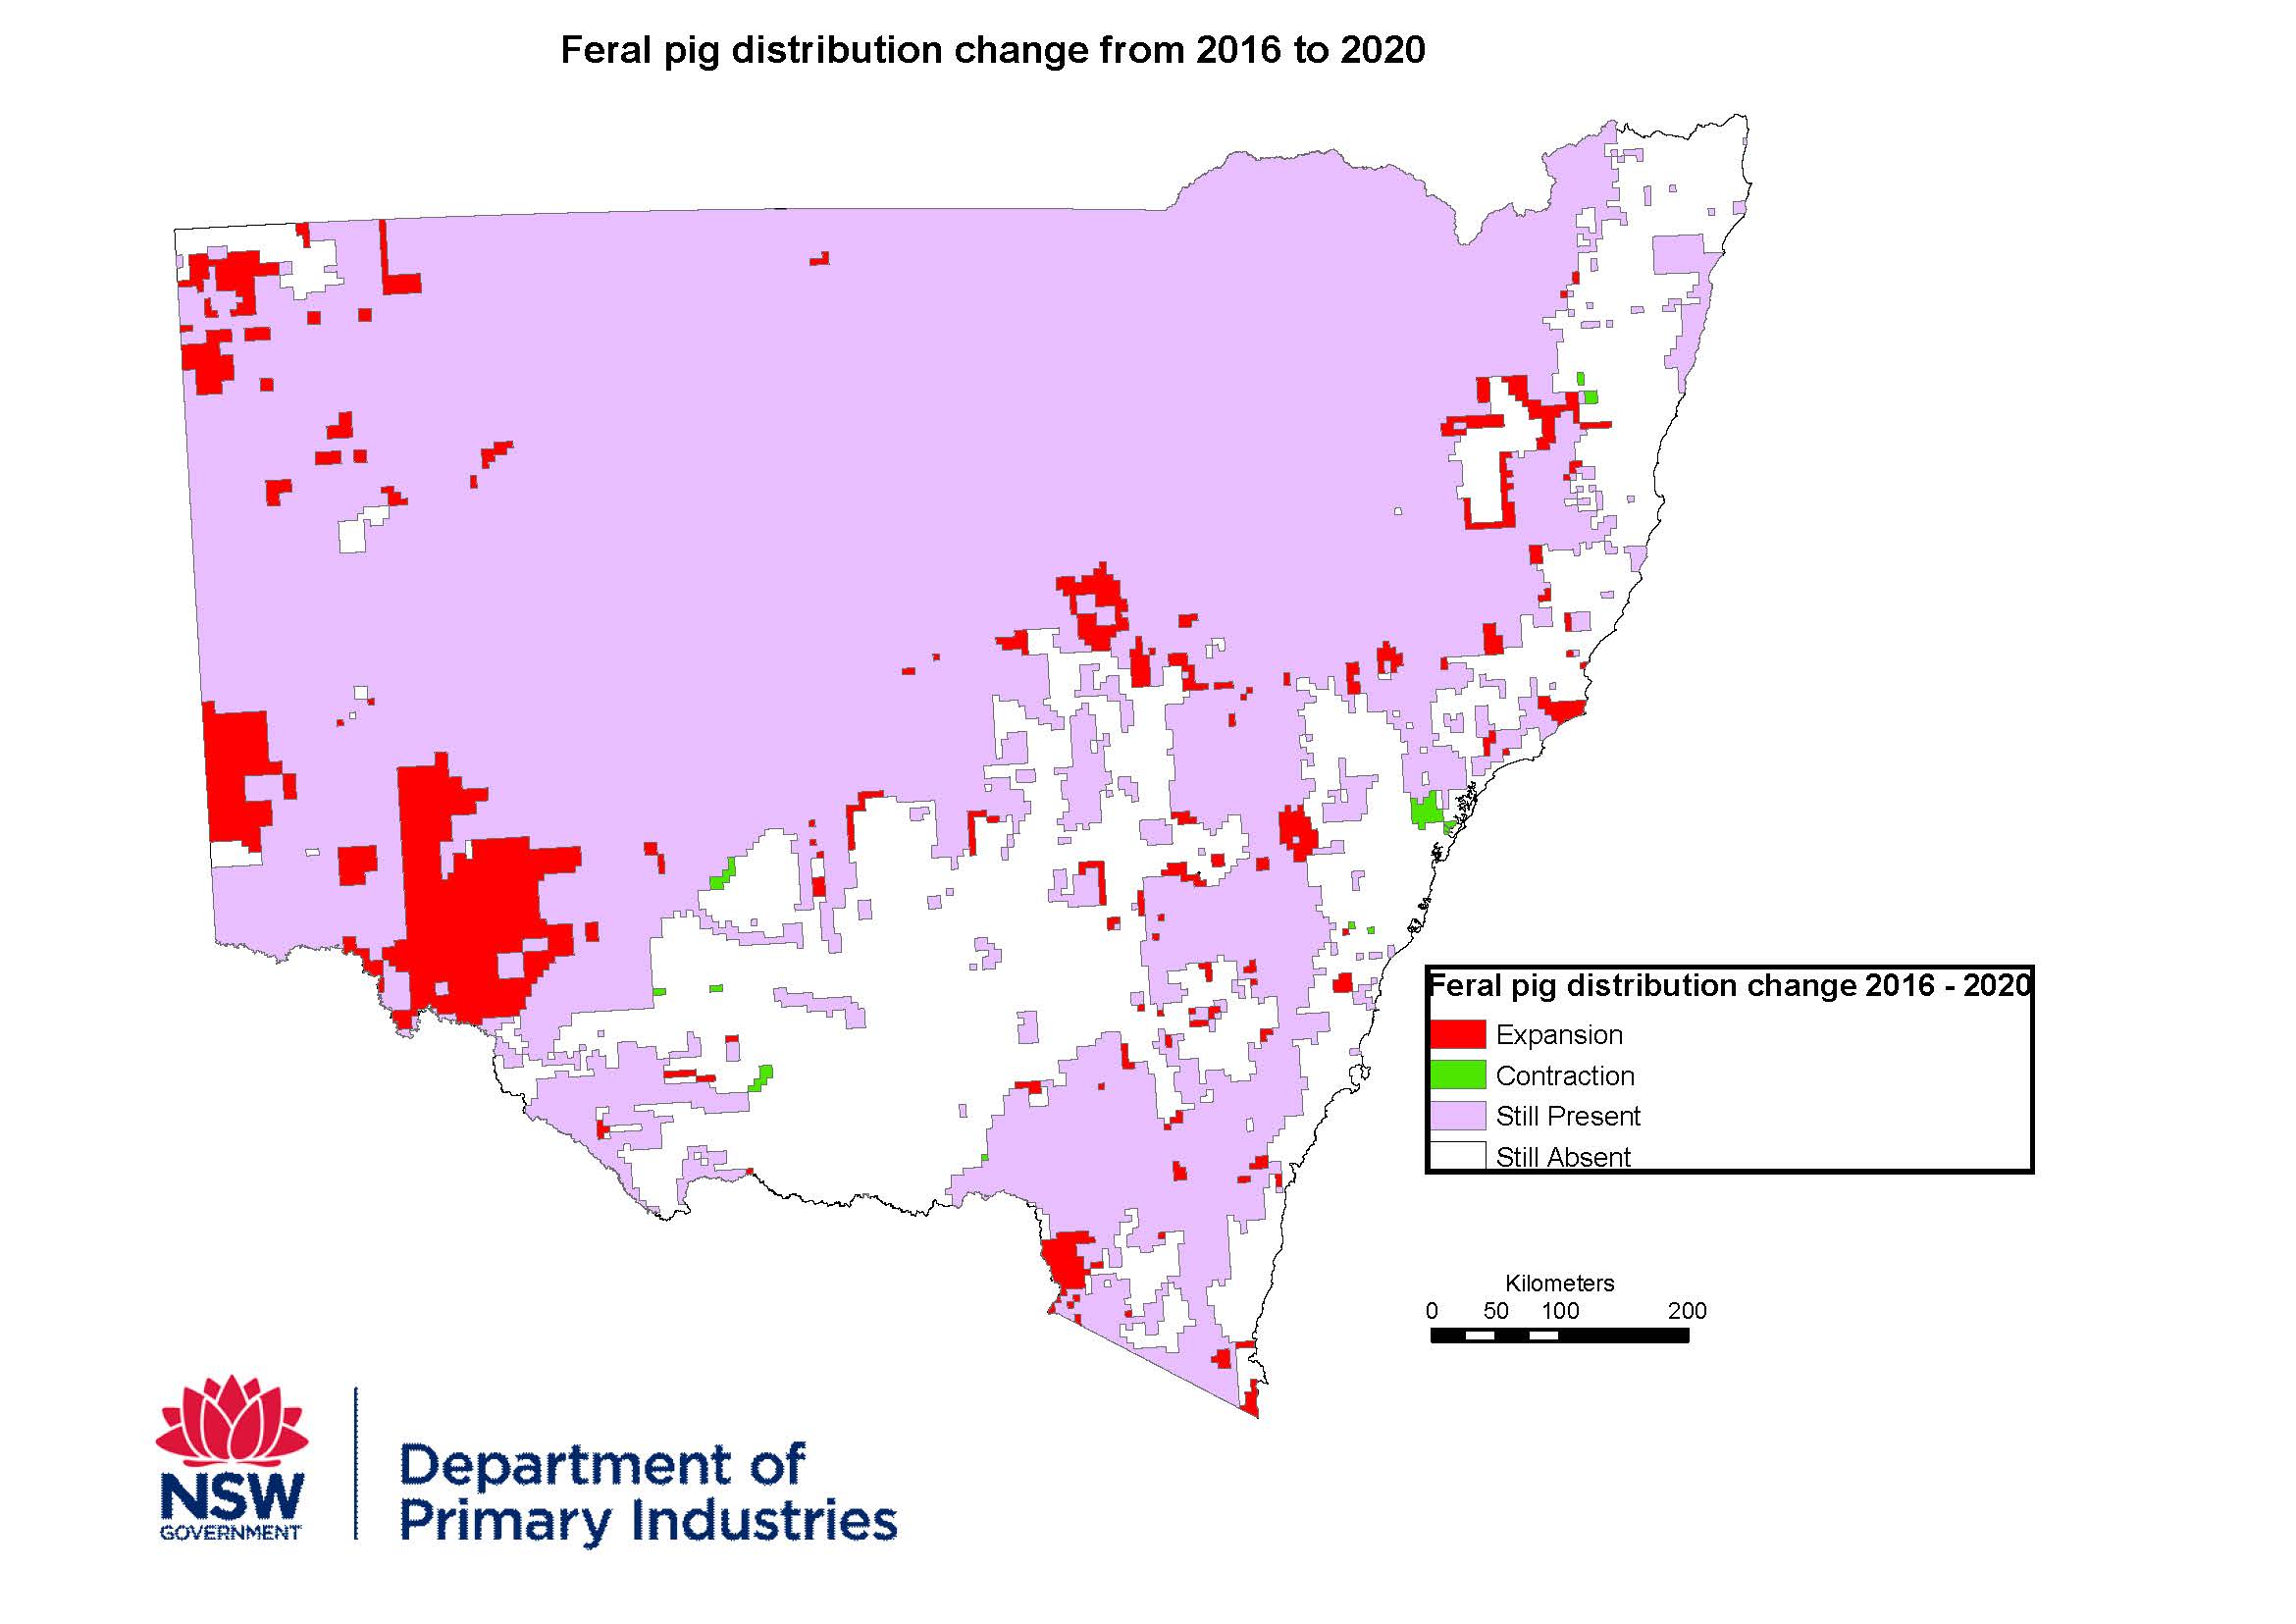 Feral pig distribution change map 2016 - 2020